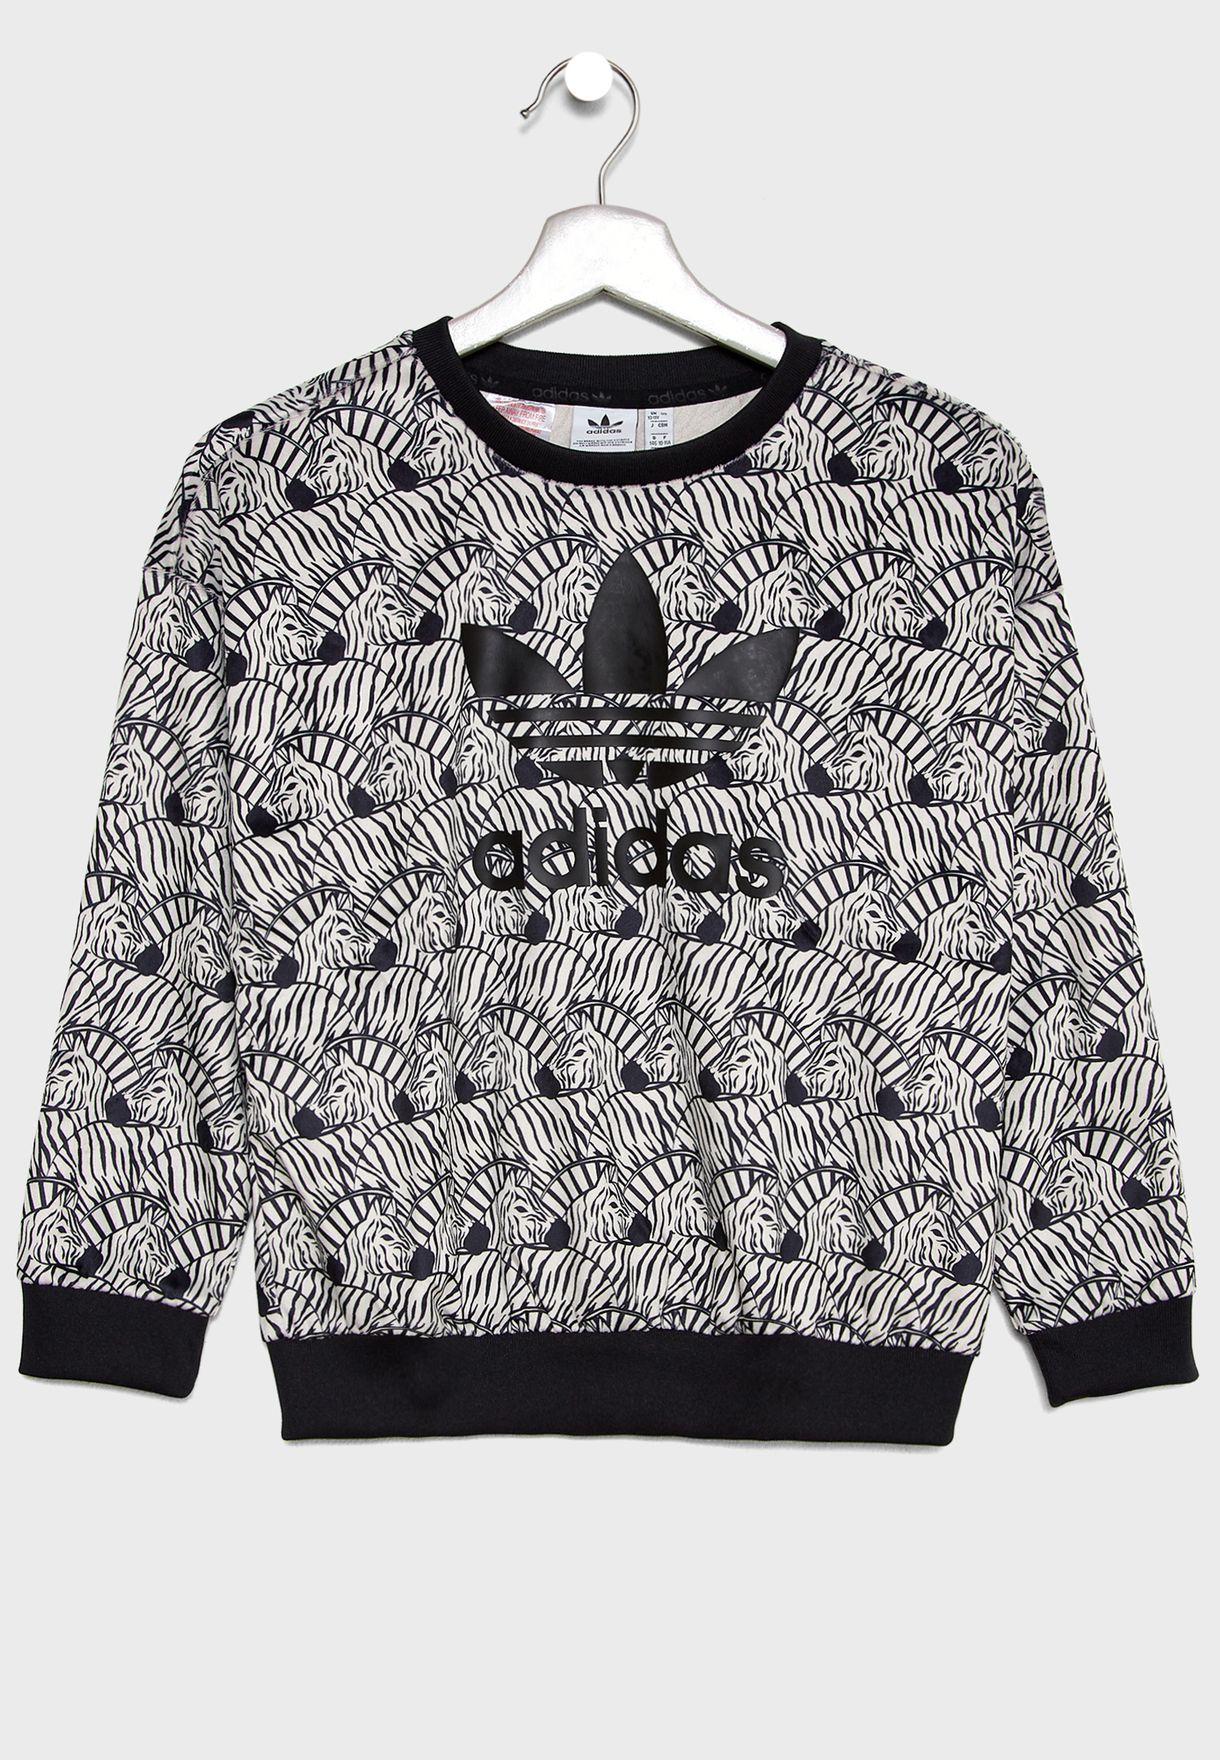 adidas zebra sweater